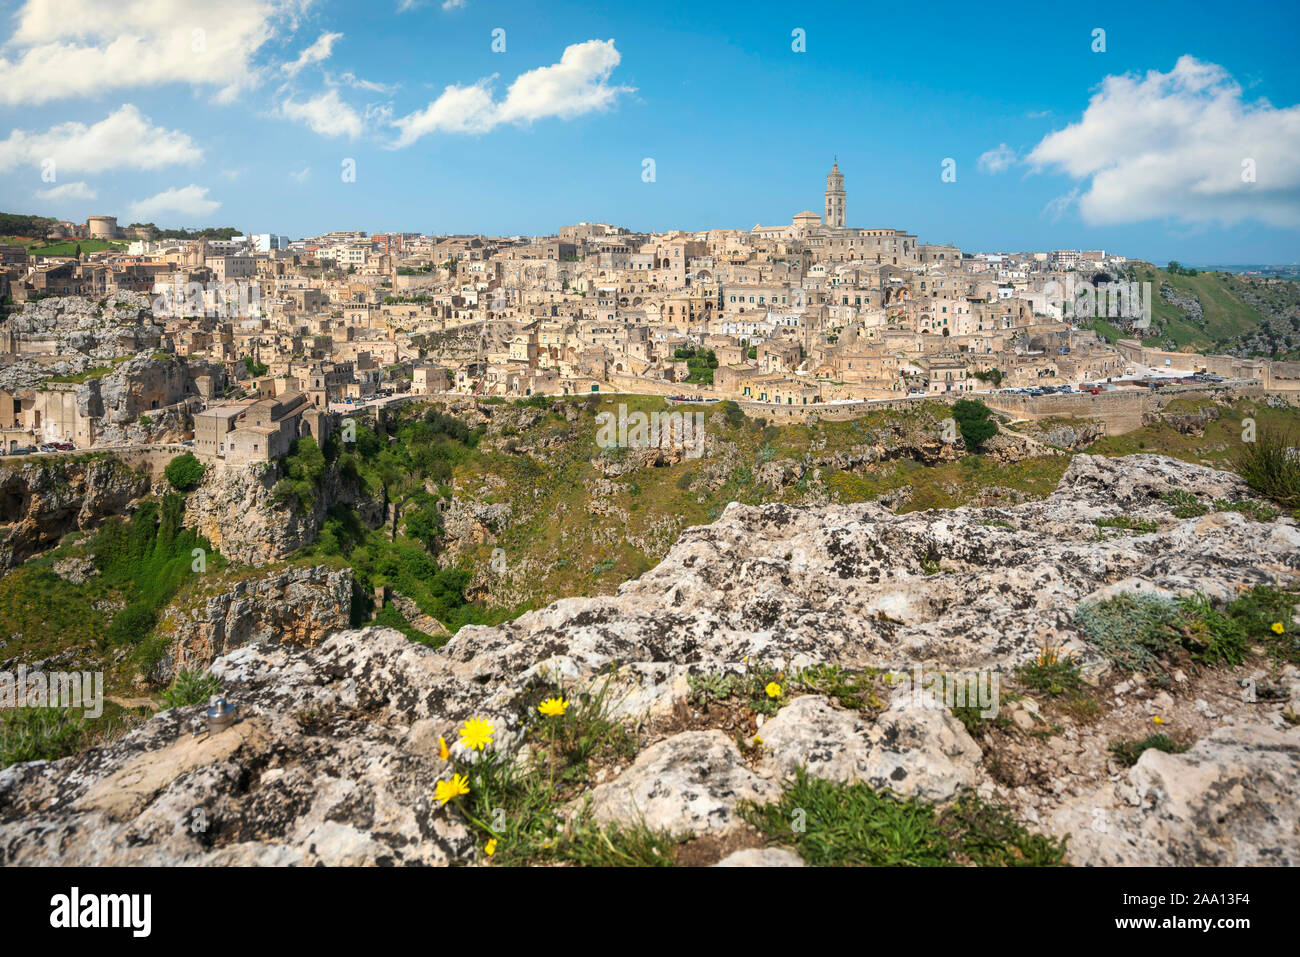 Ancienne ville de Matera i Sassi, site du patrimoine mondial de l'historique. La Basilicate, Italie, Europe Banque D'Images